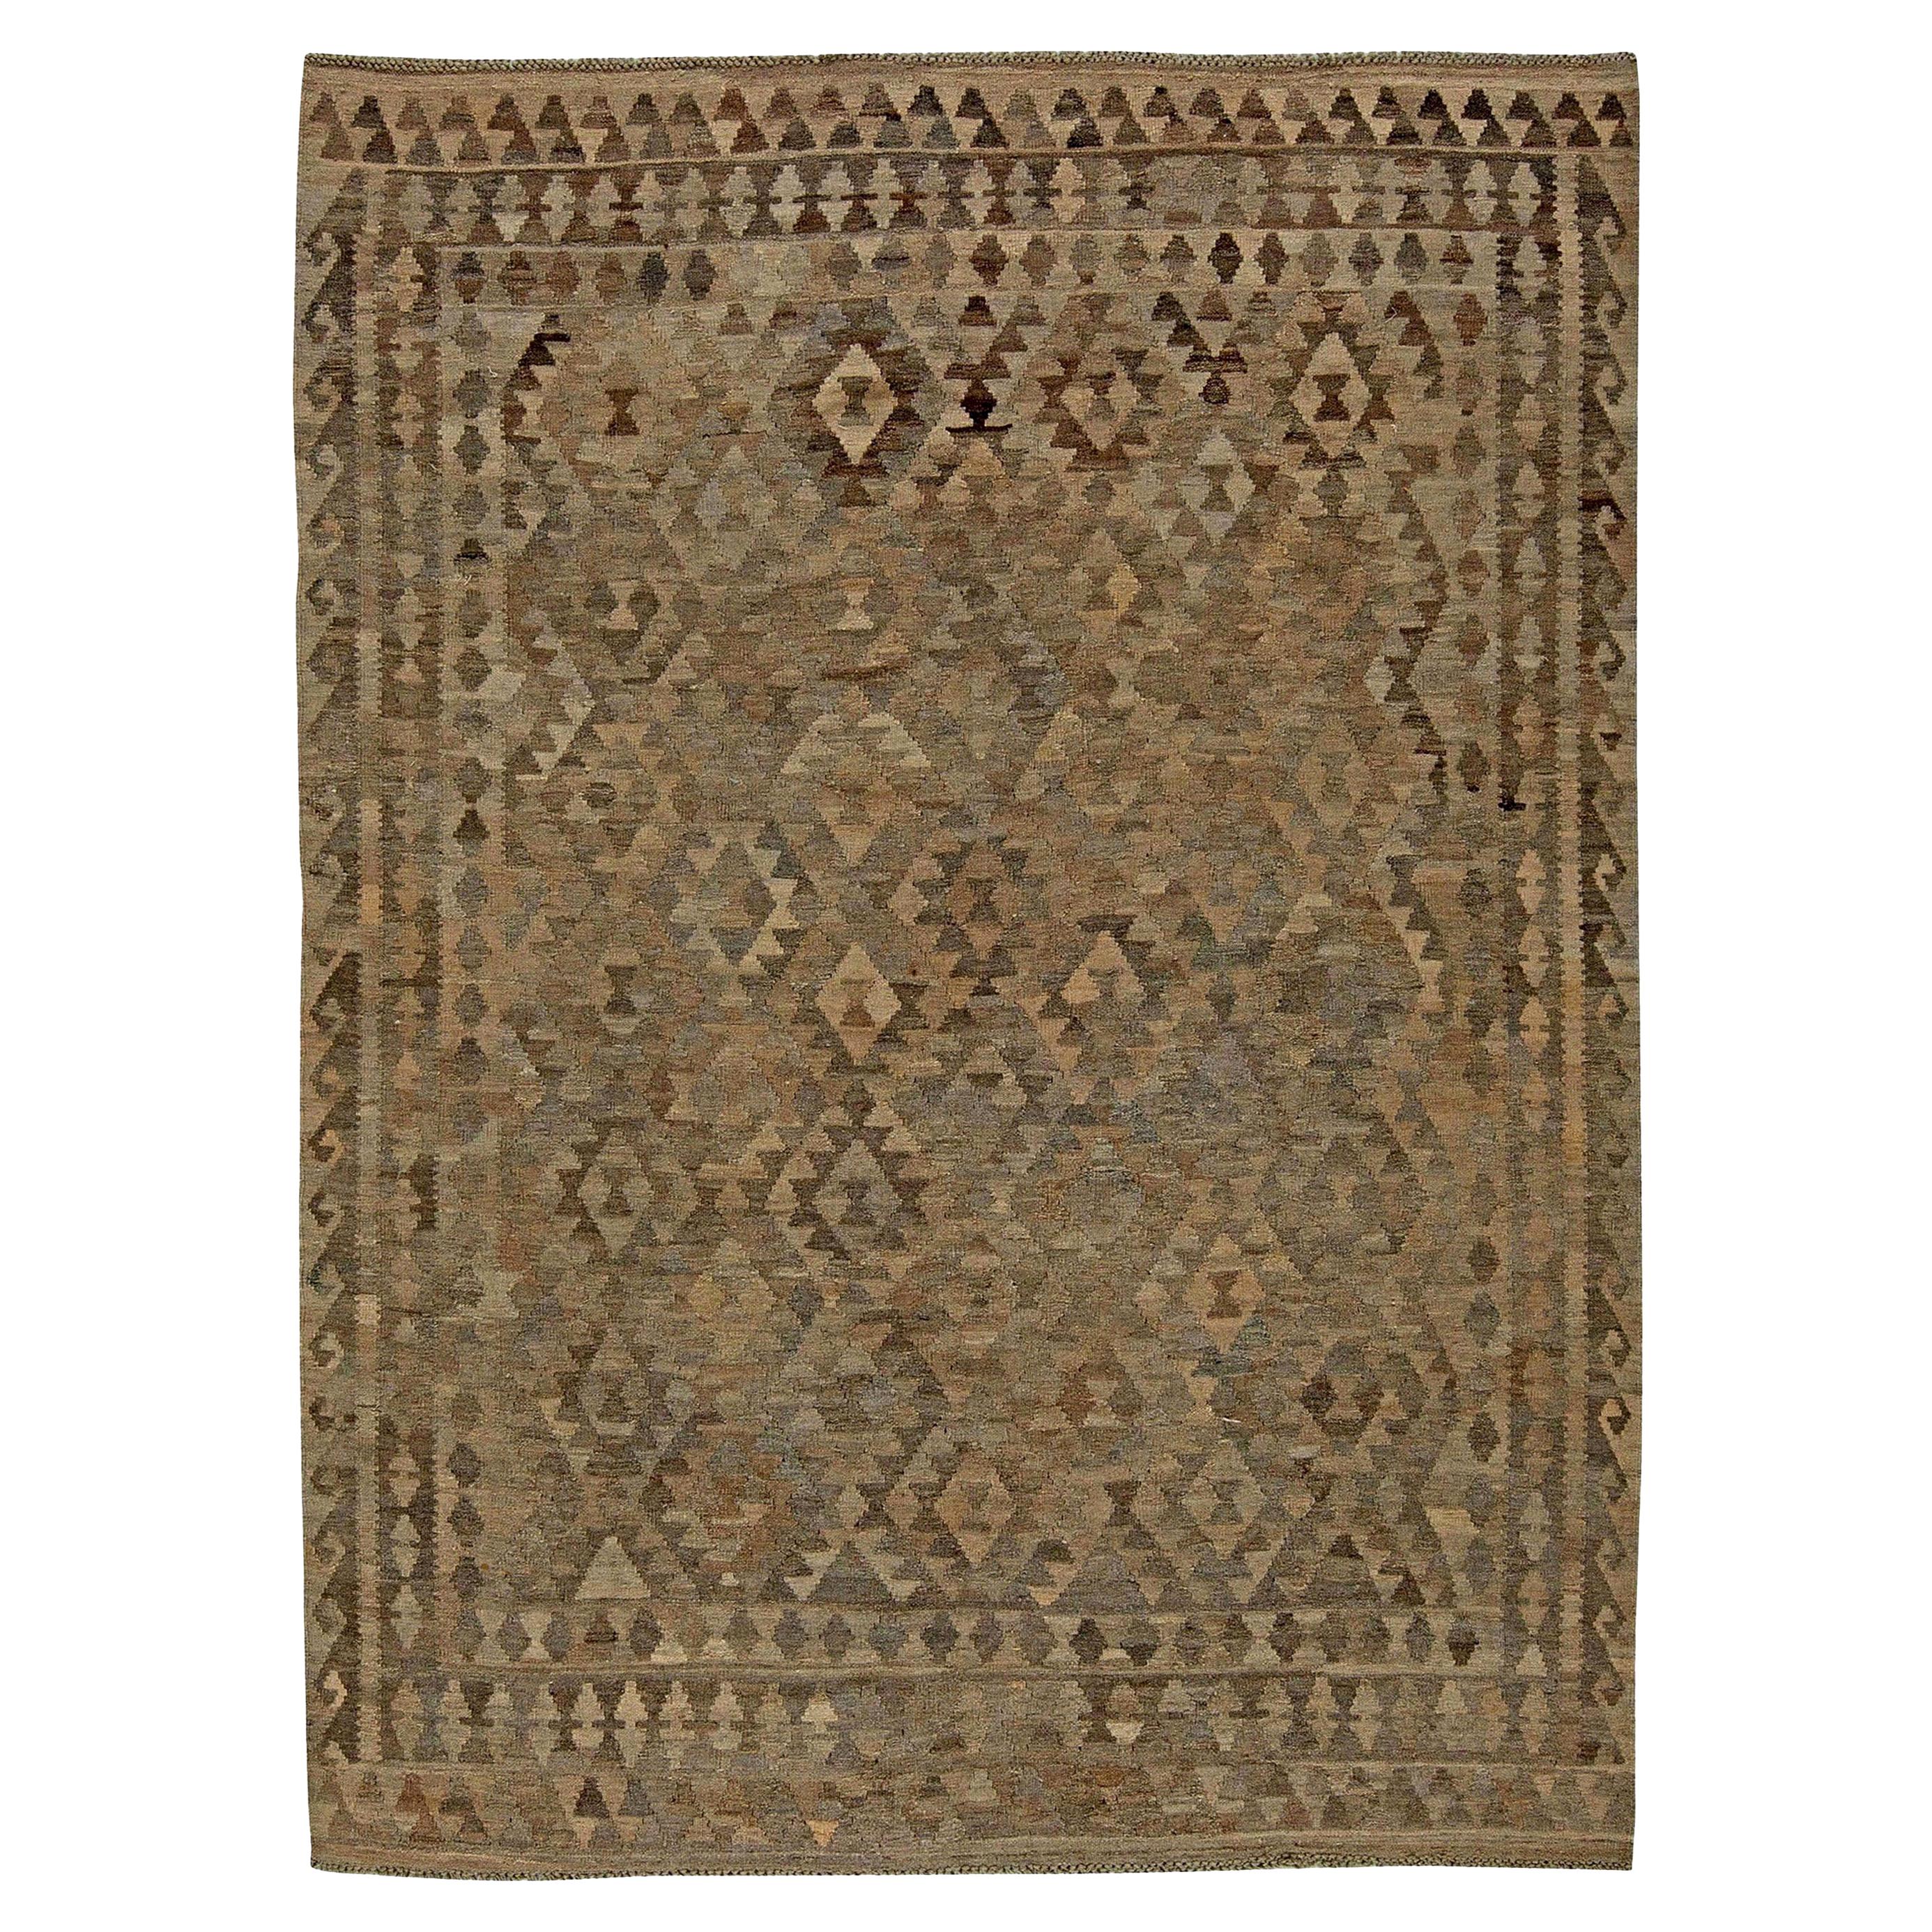 Mid-20th century Turkish Geometric Kilim Wool Rug